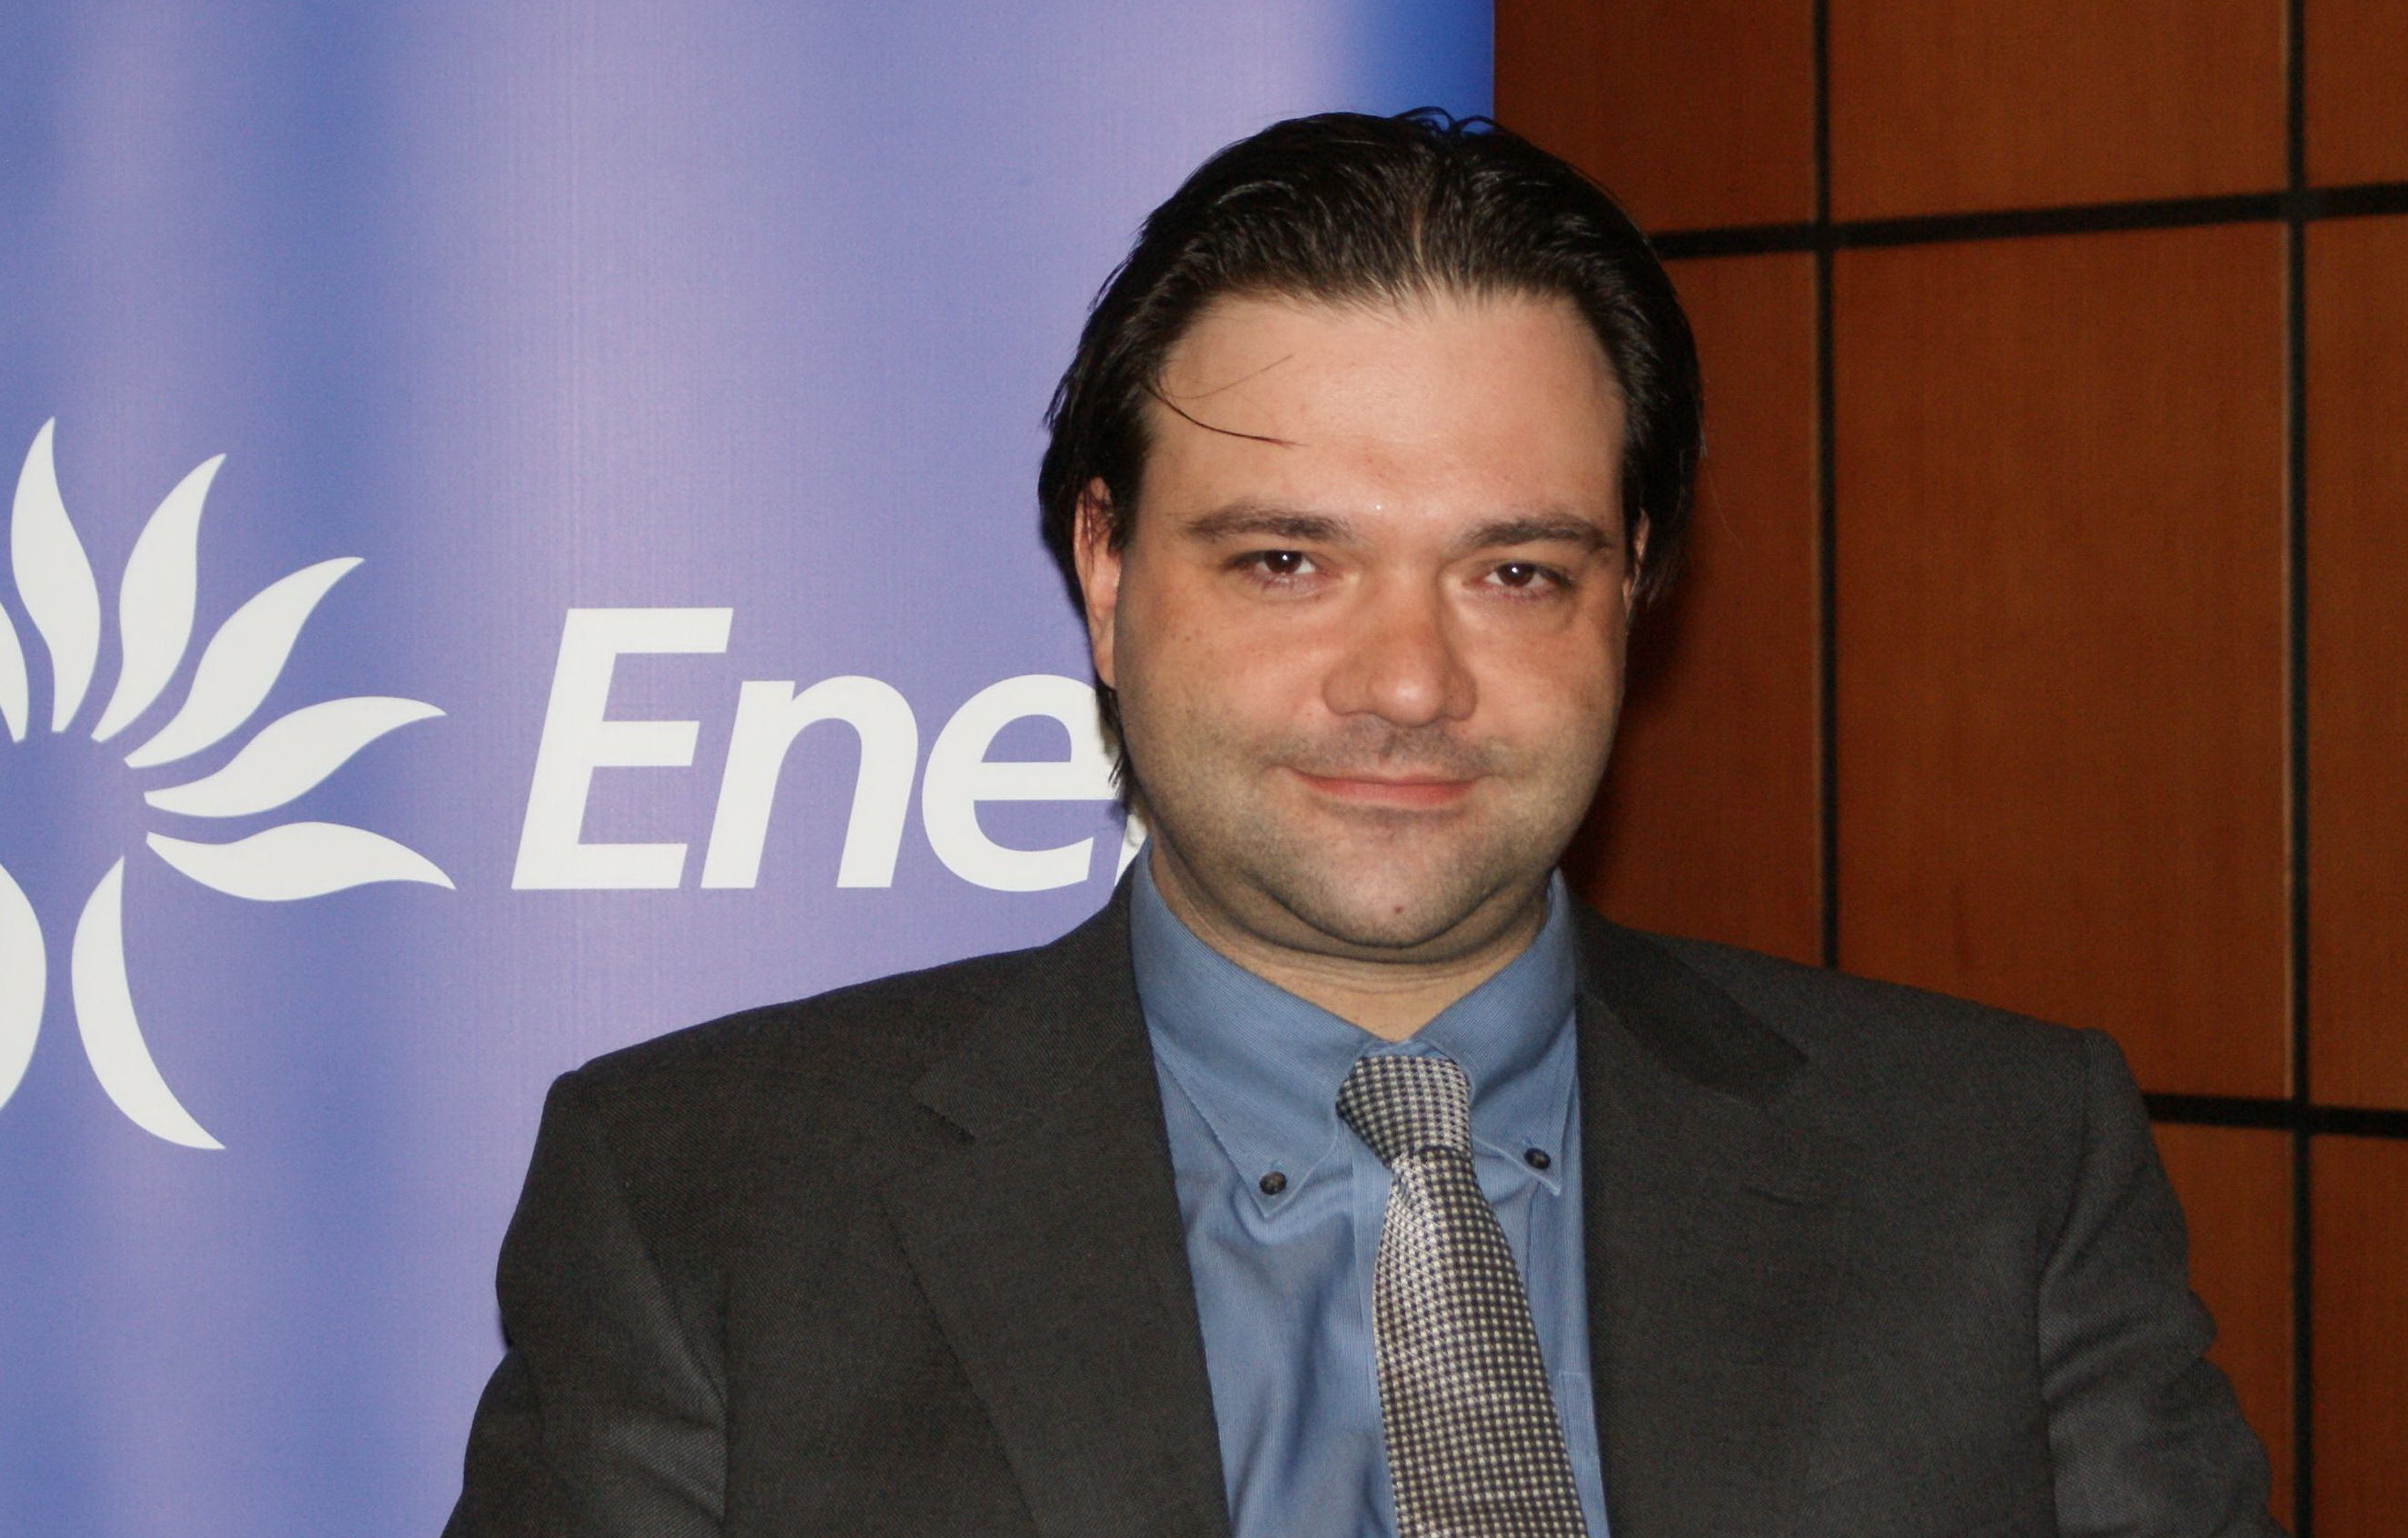 Şeful Enel Energie, Matteo Cassani, a murit după ce s-a aruncat de pe sediul instituţiei din Bucureşti. Povestea primului  italian trimis de Enel în România